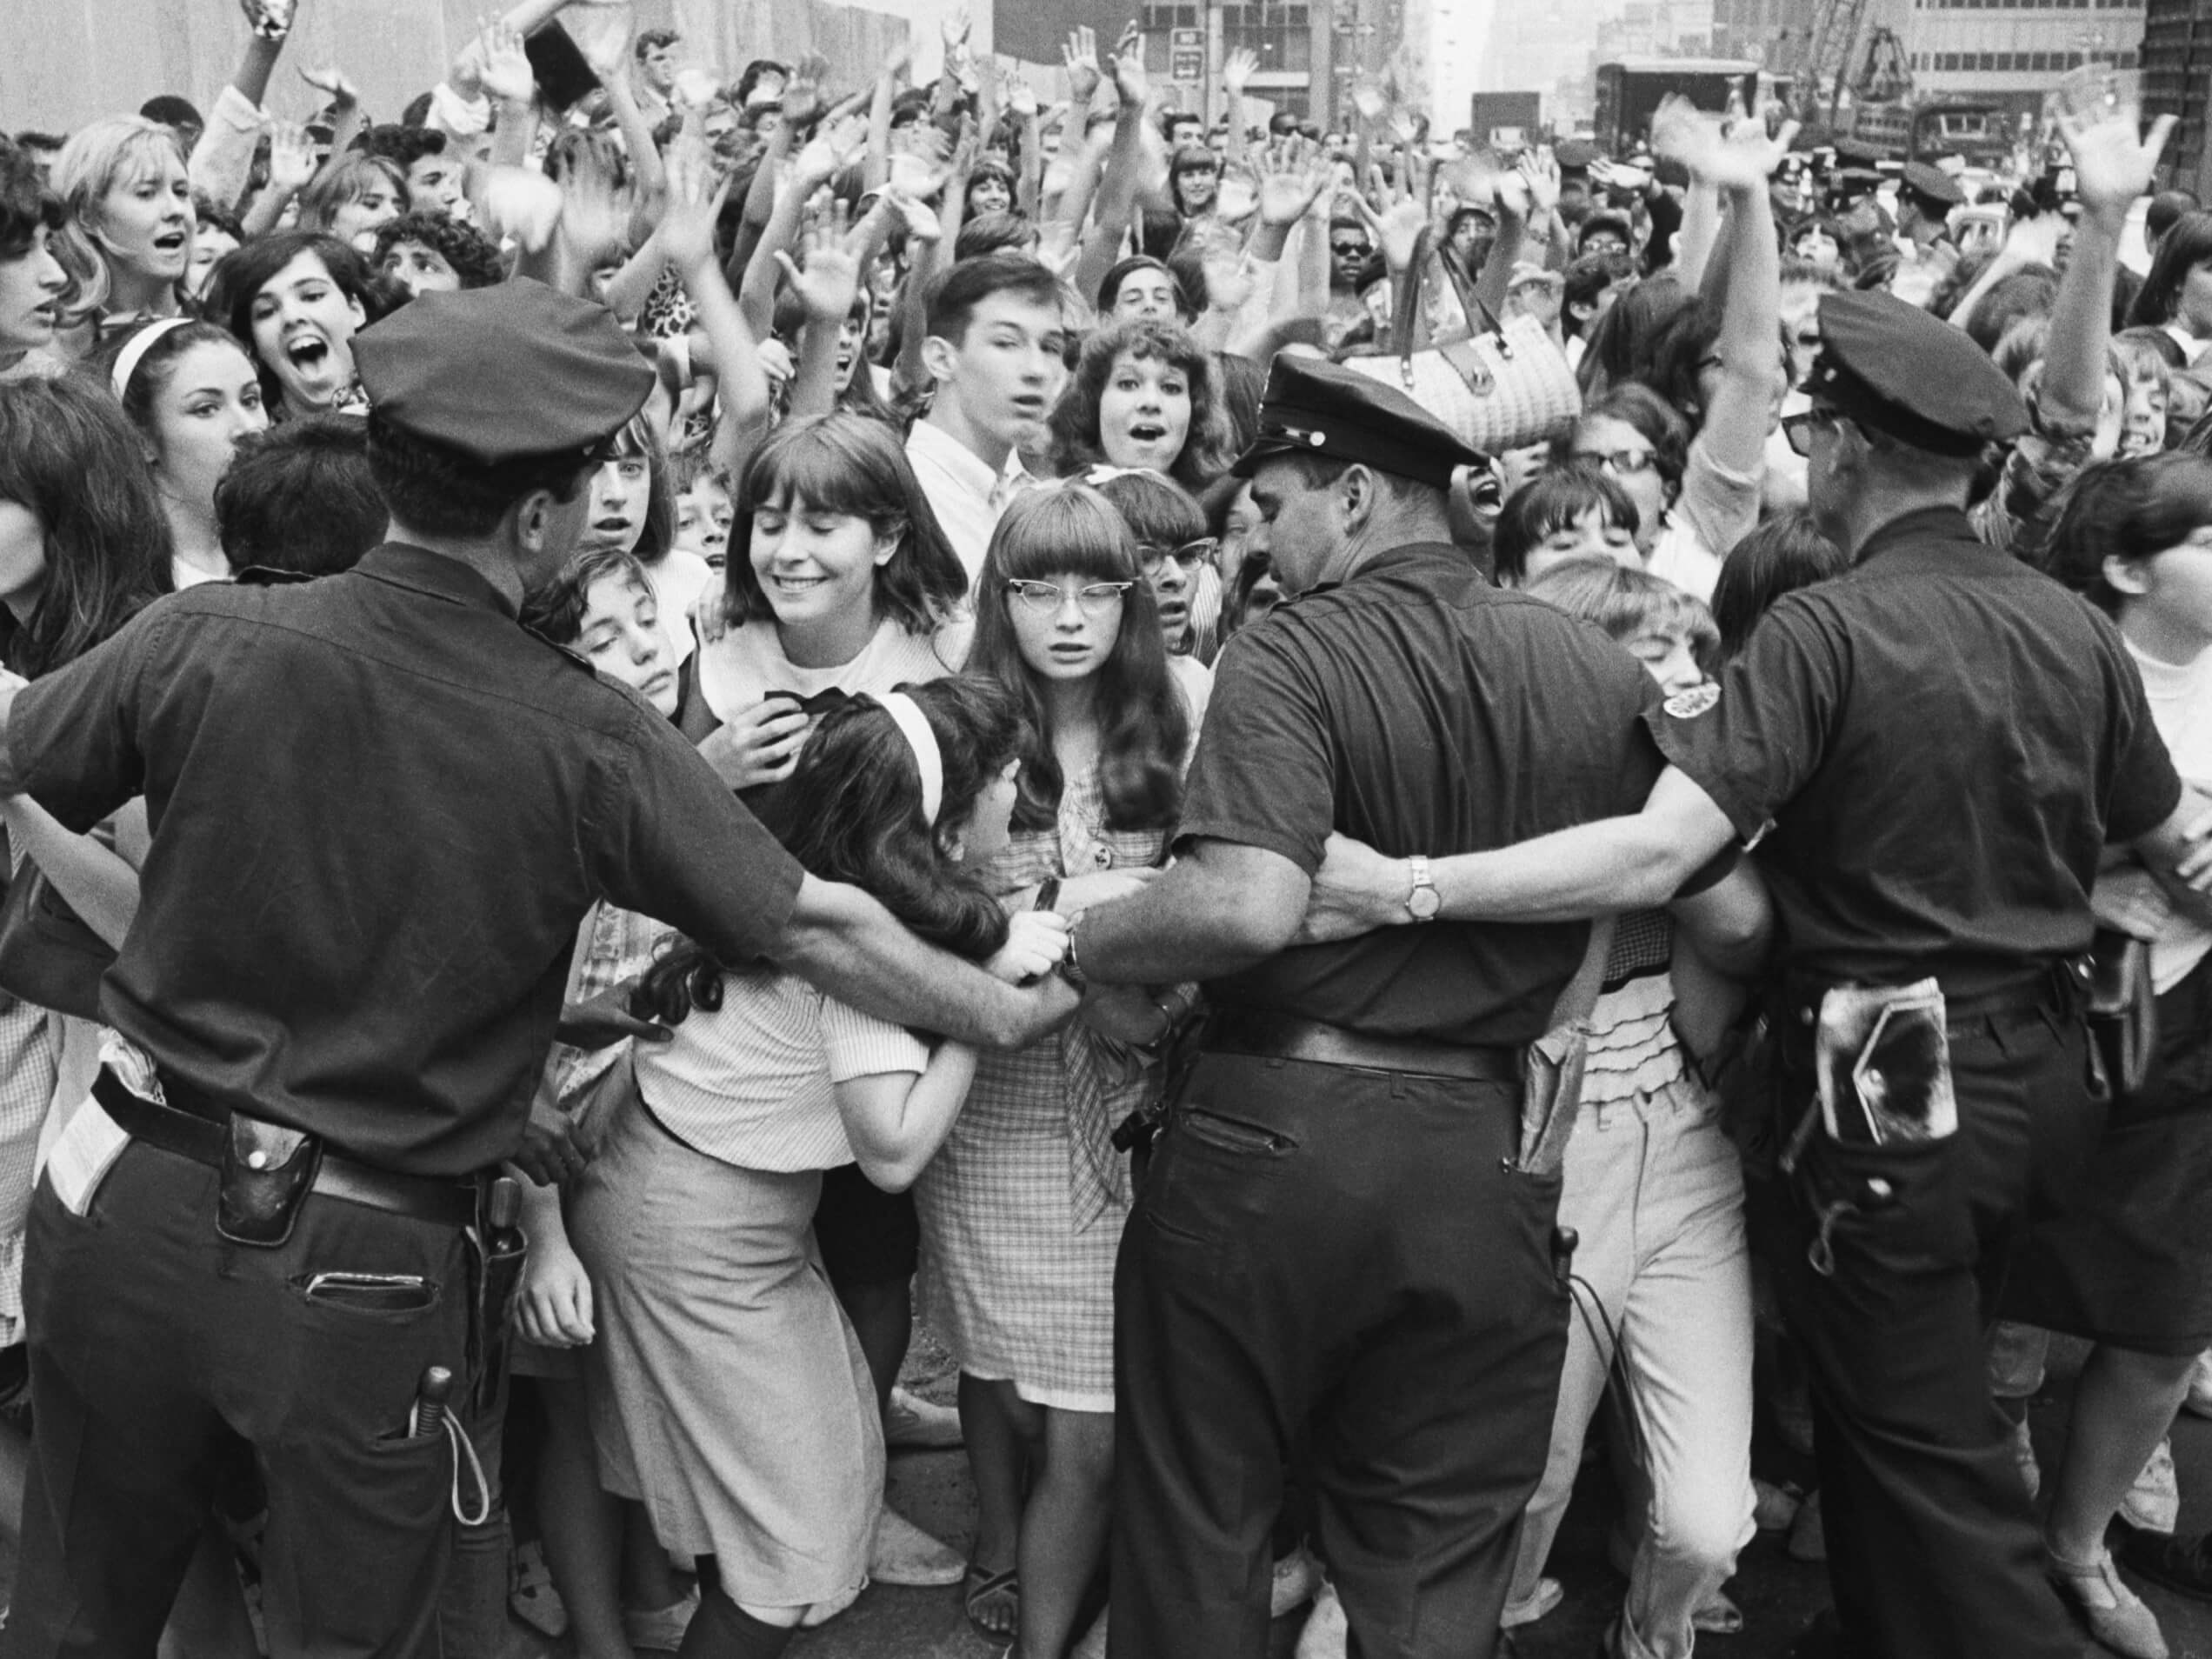 John Lennon Mengatakan 1 Baris dalam 'Revolusi' The Beatles Mengomentari Polisi